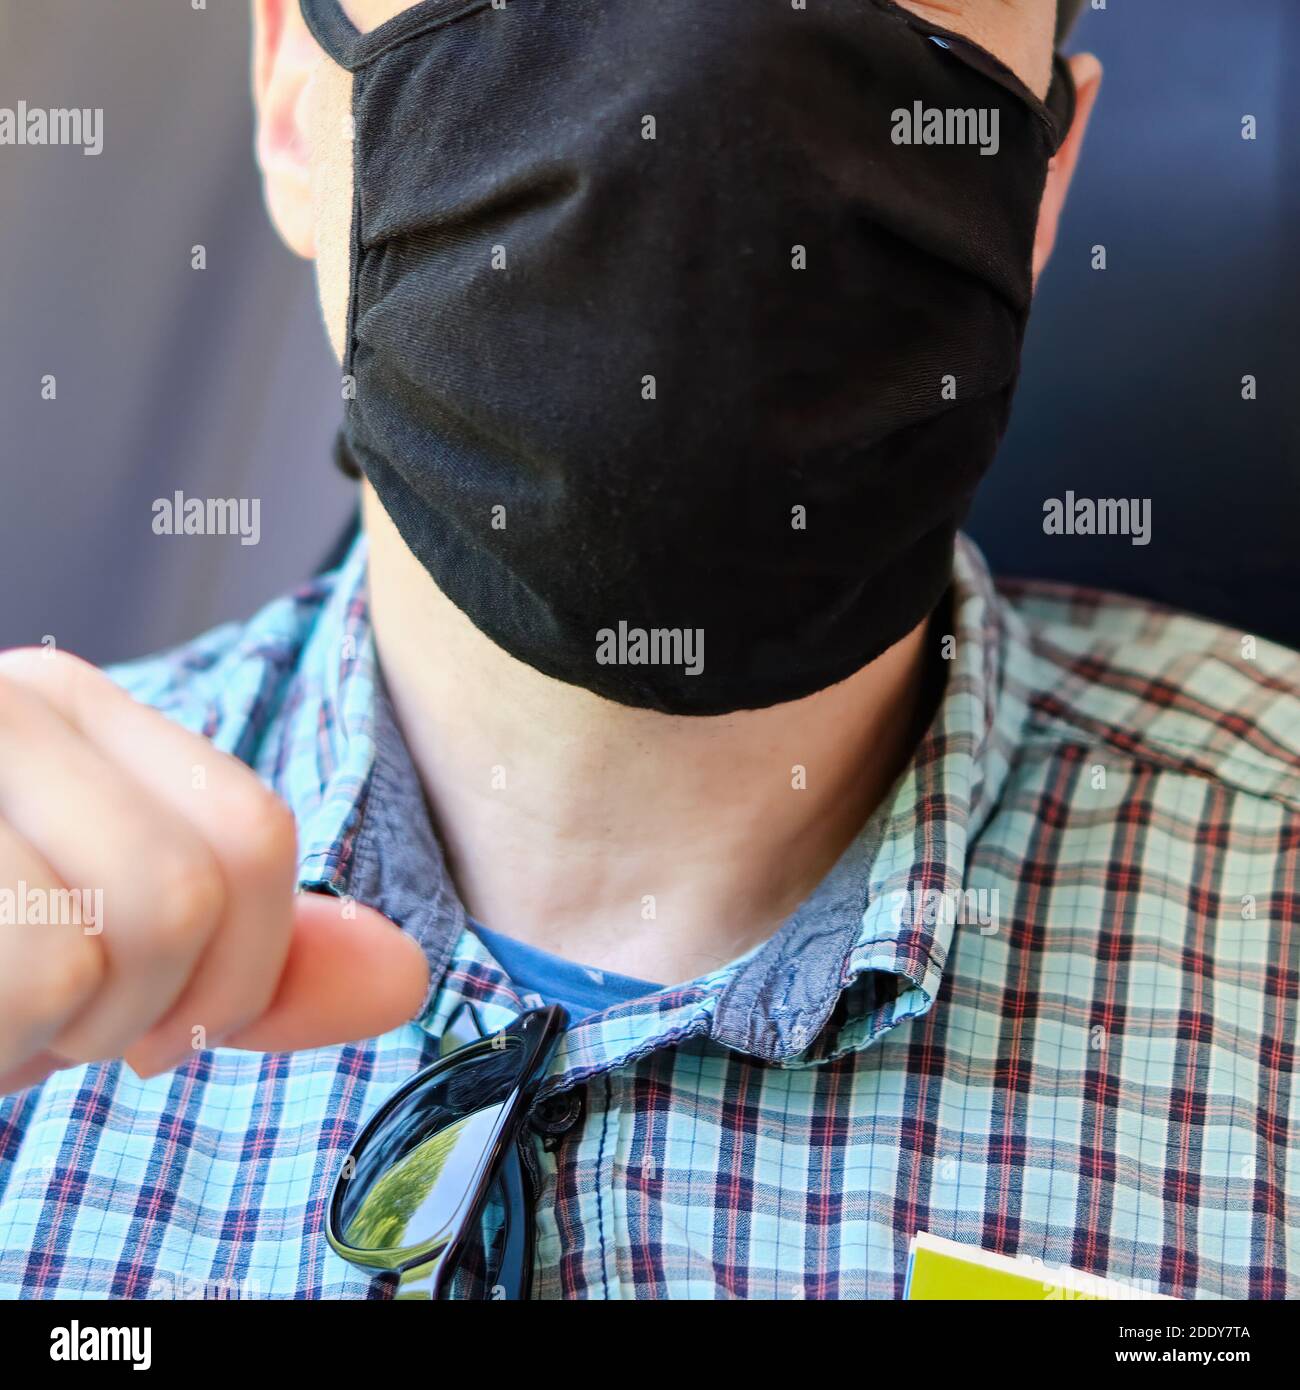 Visage humain avec masque comme protection de la bouche et du nez comme protection contre le corona ou le covid-19. Banque D'Images